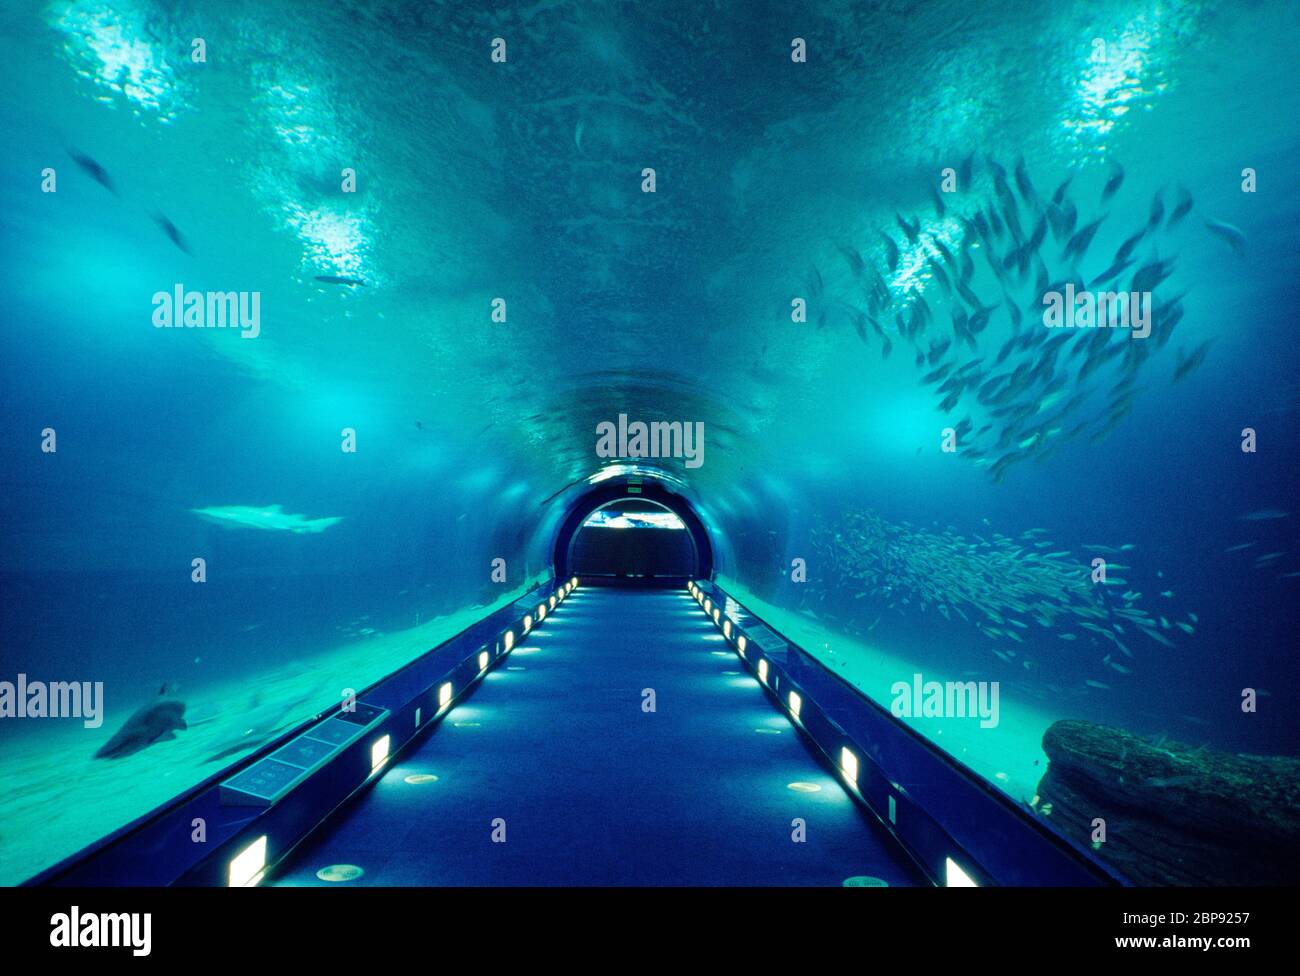 Tunnel in aquarium. Oceanografic, City of Arts and Sciences, Valencia, Spain. Stock Photo